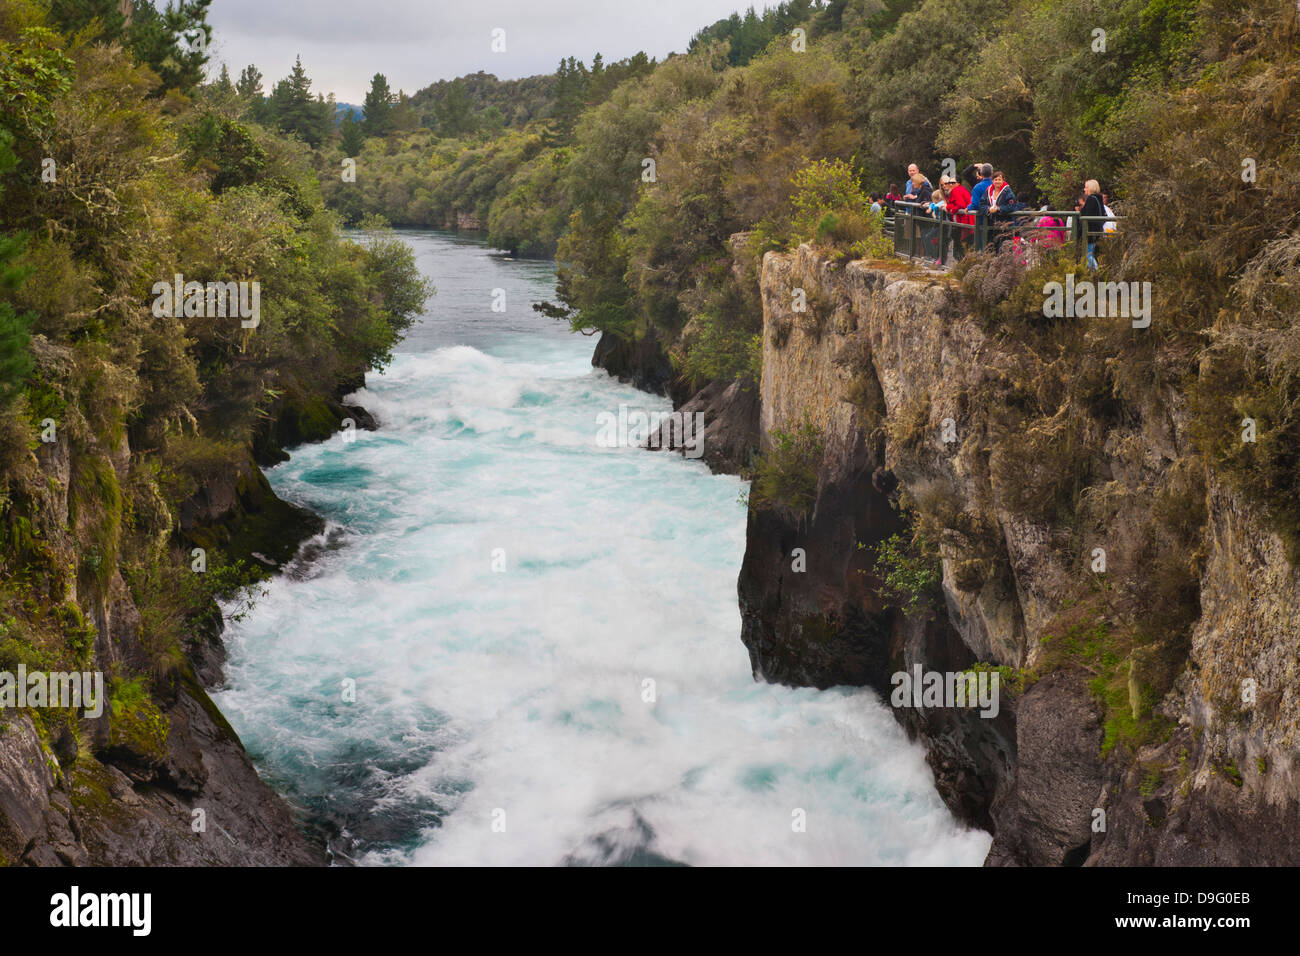 Les touristes visitant les Chutes de Huka, Taupo, île du Nord, de la région de Waikato, Nouvelle-Zélande Banque D'Images